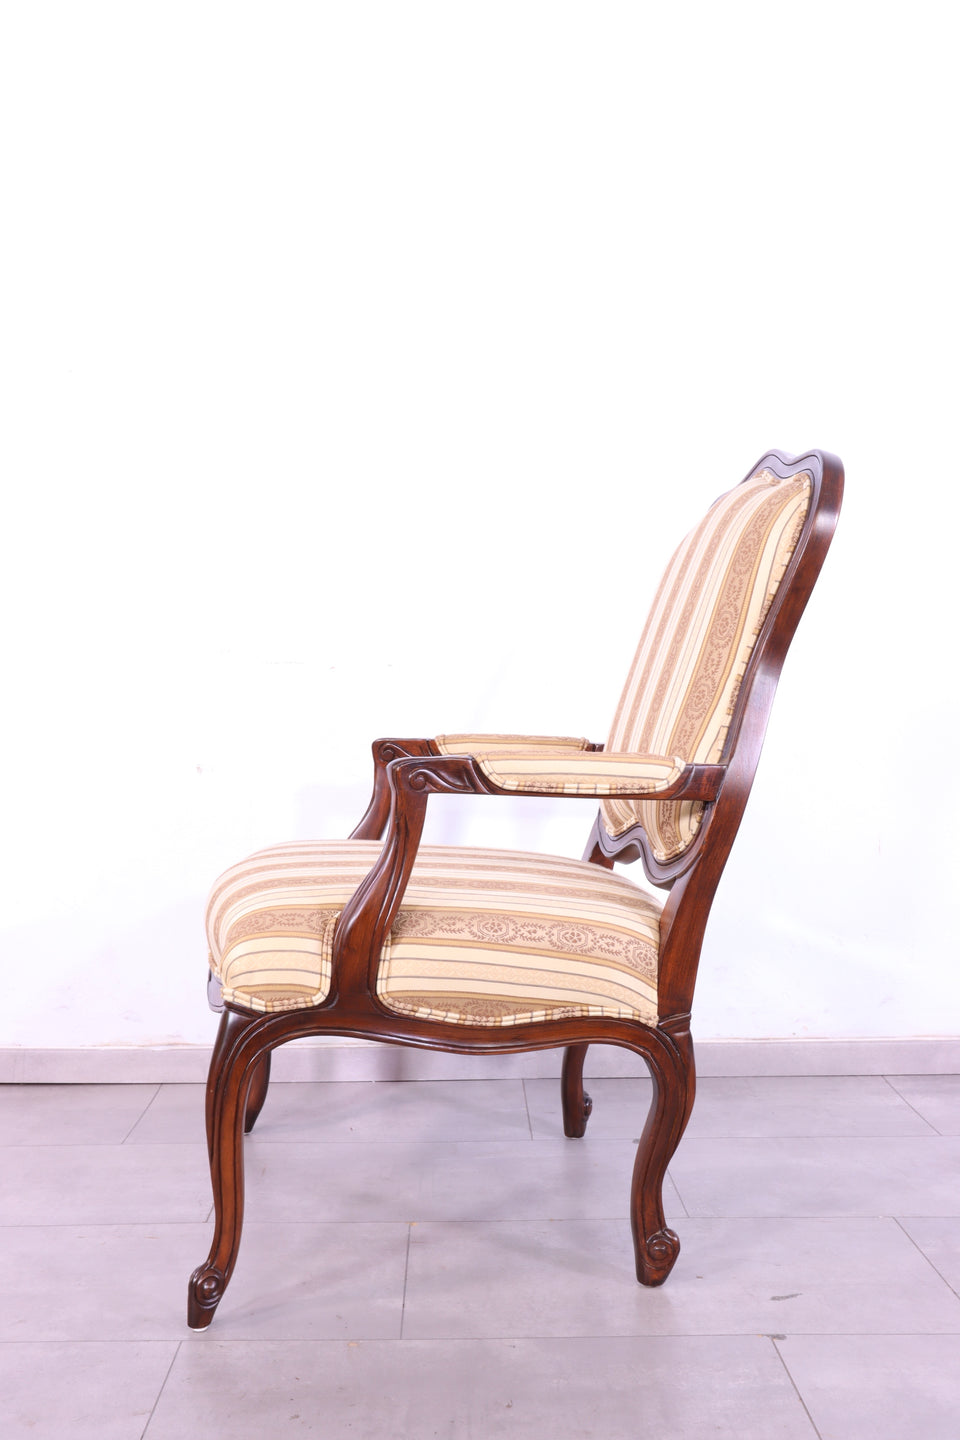 Edler Original Drexel Heritage Sessel Monica Chair Relax Sessel